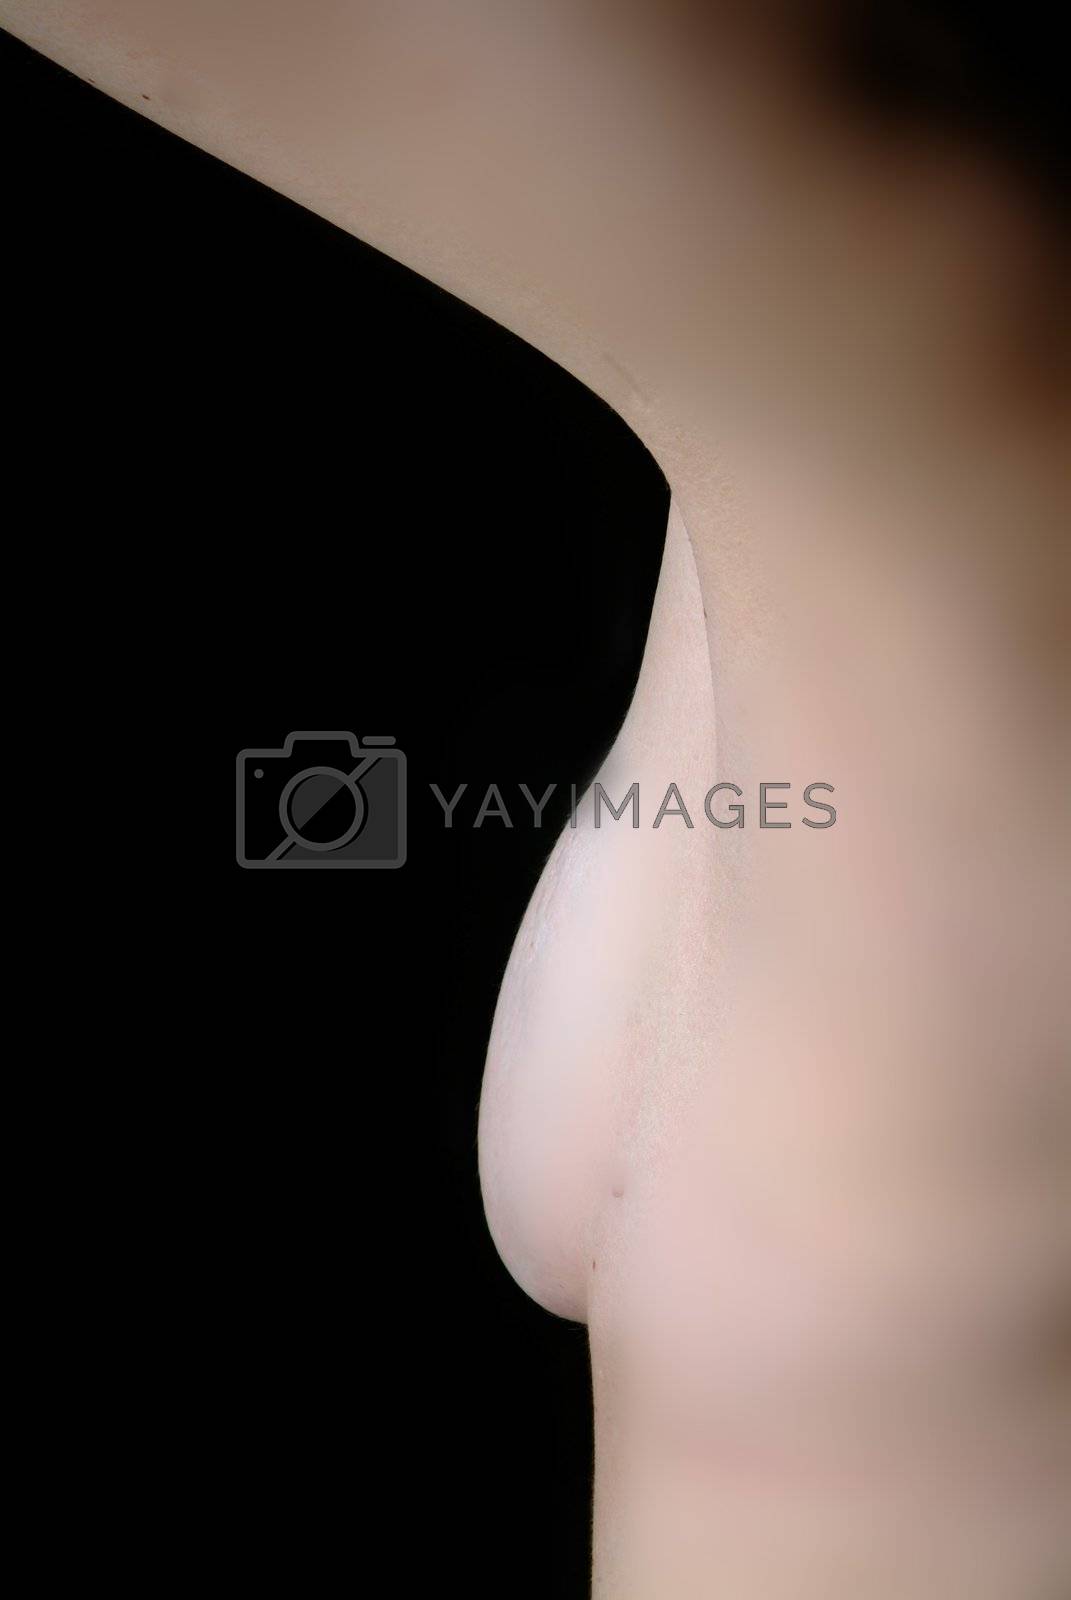 Royalty free image of busen halb | half breast  by fotofritz